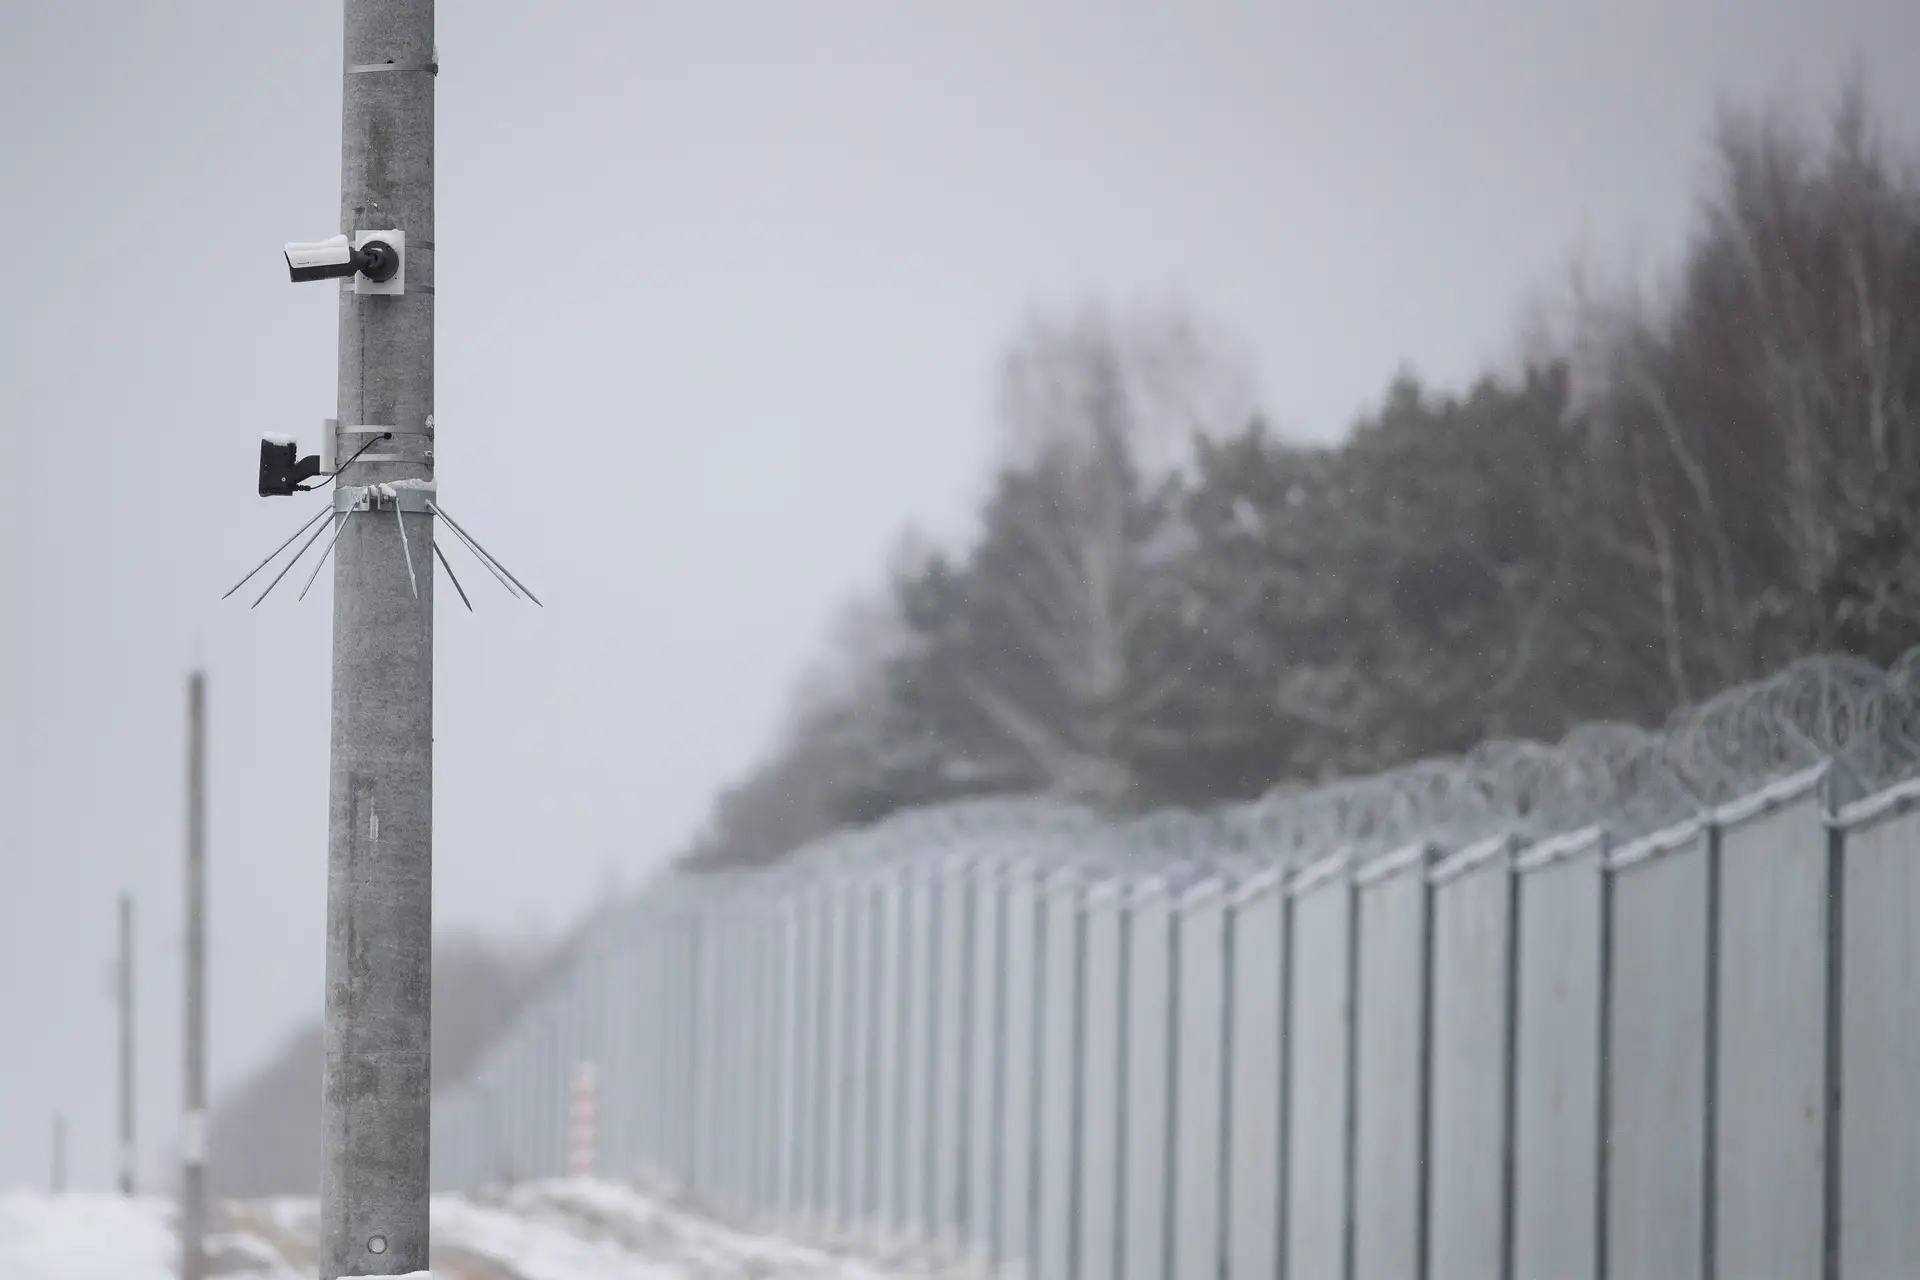 Polónia instala equipamento de monitorização em muro na fronteira com a Bielorrússia